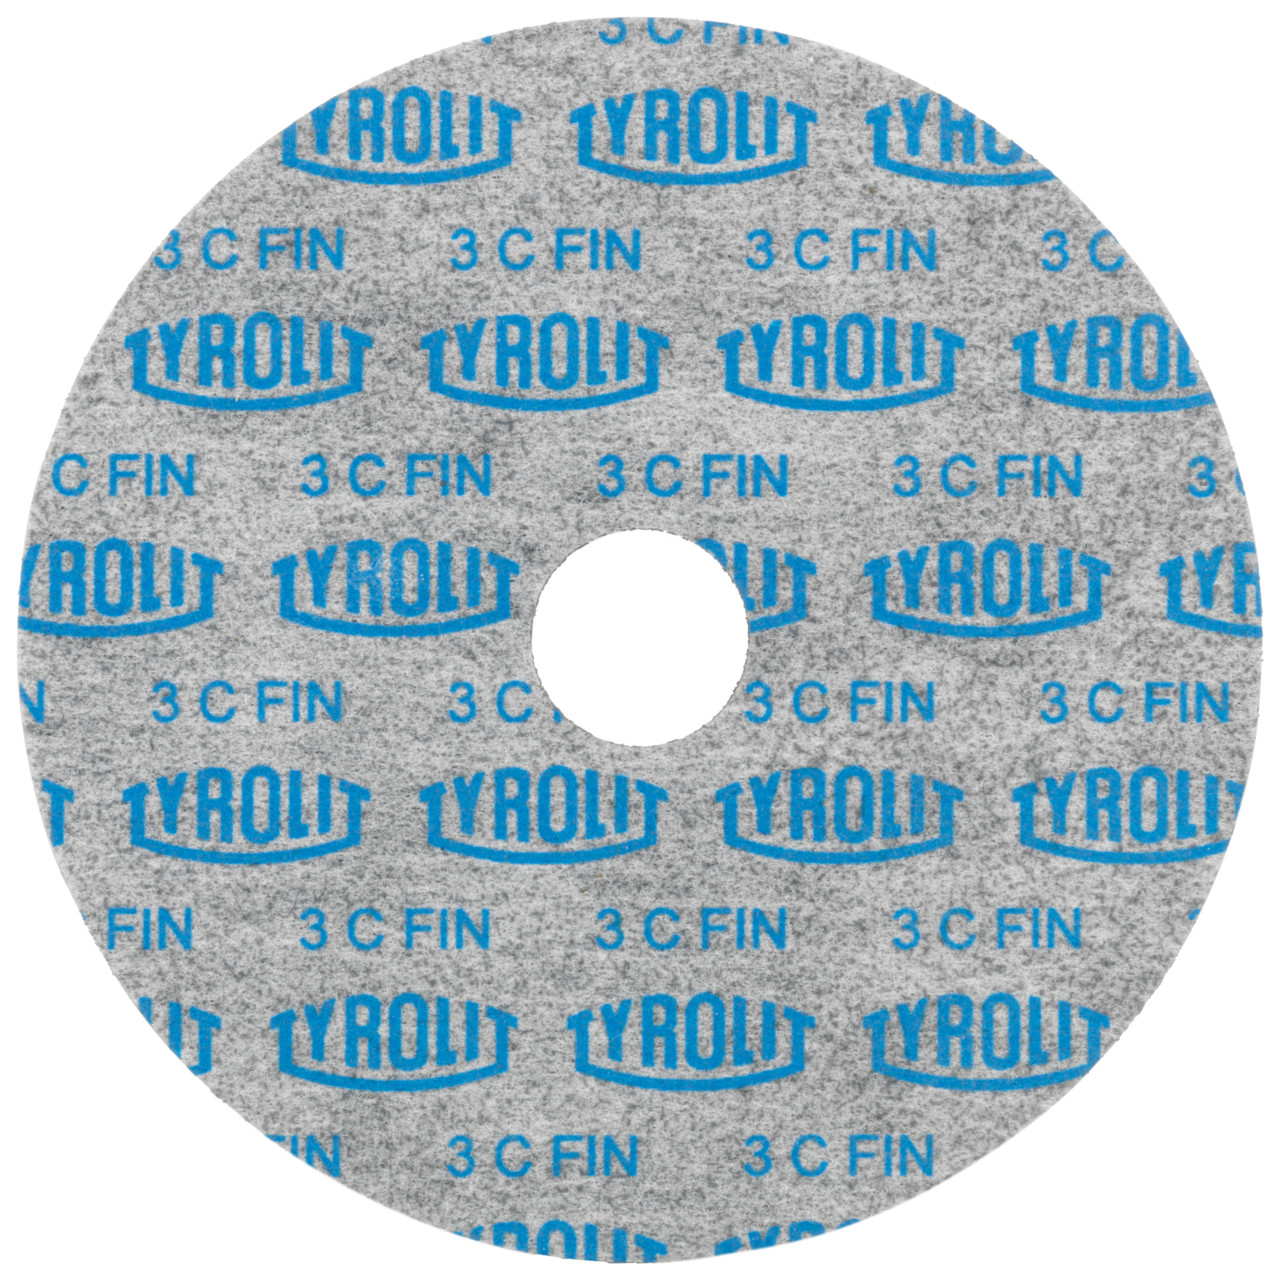 Tyrolit Discos compactos prensados DxDxH 152x6x25,4 De uso universal, 2 C FEIN, forma: 1, Art. 34190275